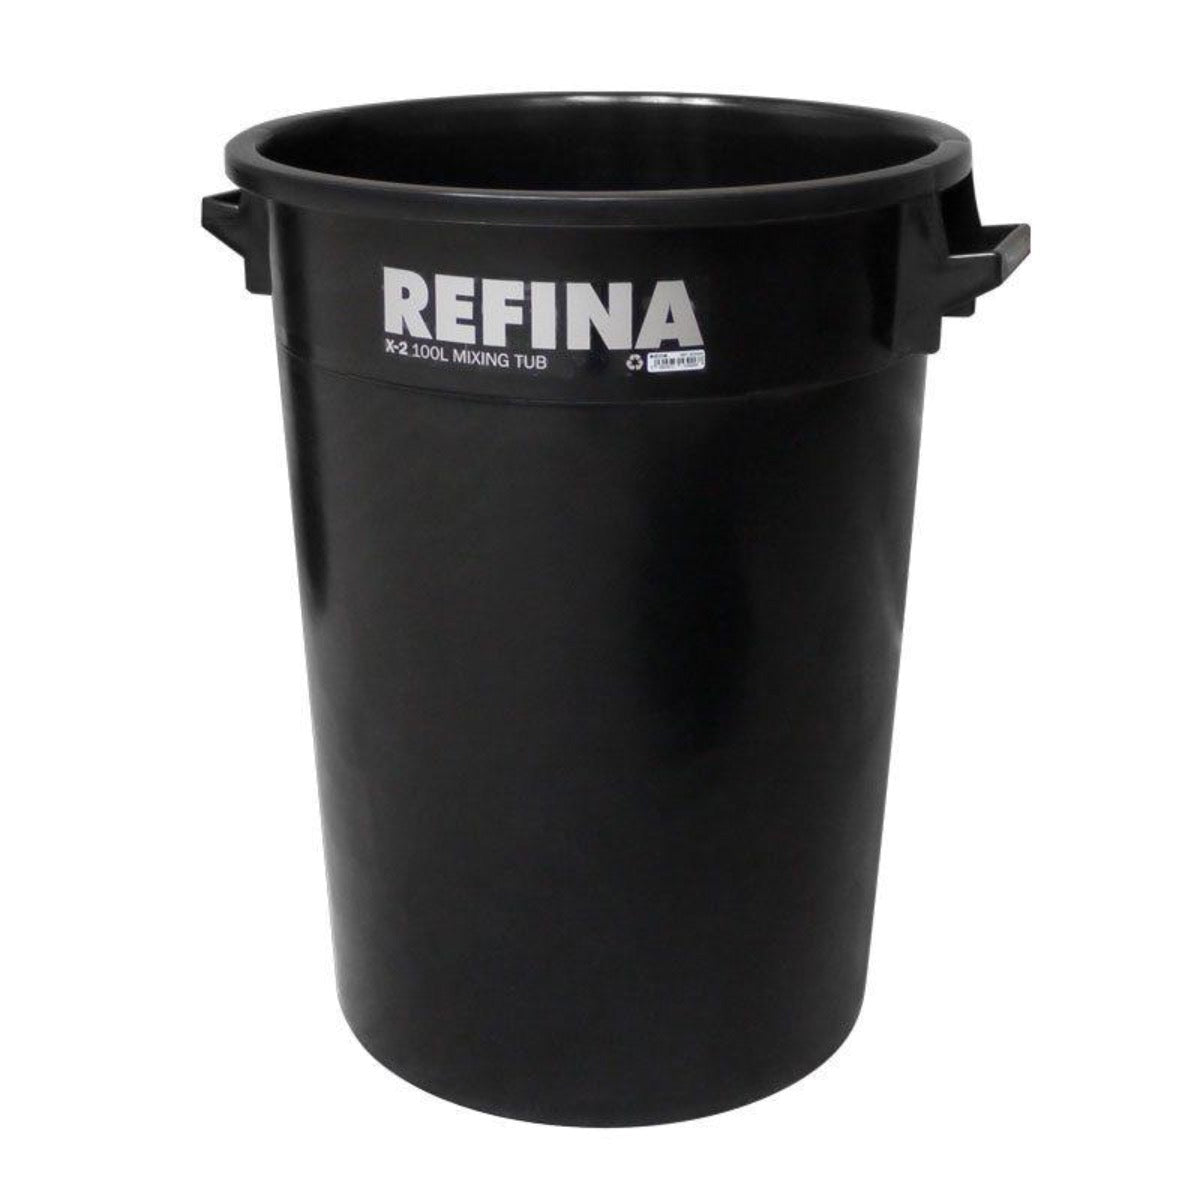 Refina X-2 plastic mixing tub 100L black (321043) - Amaroc - Render & Drylining Supplies